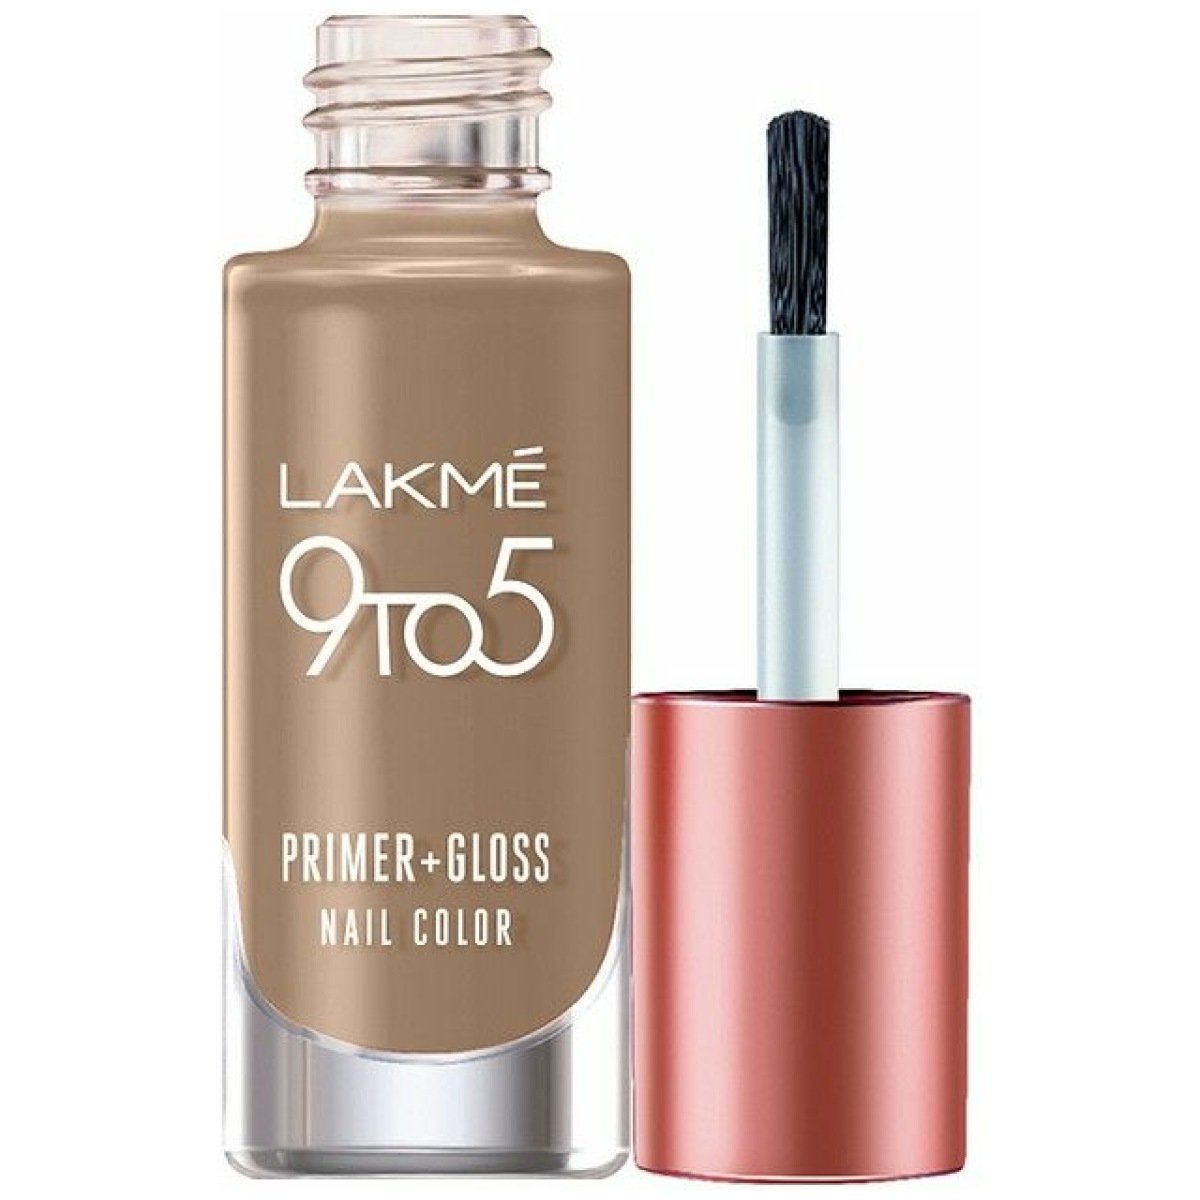 Lakme Nail Color Remover with Vitamin E - 27ml | eBay